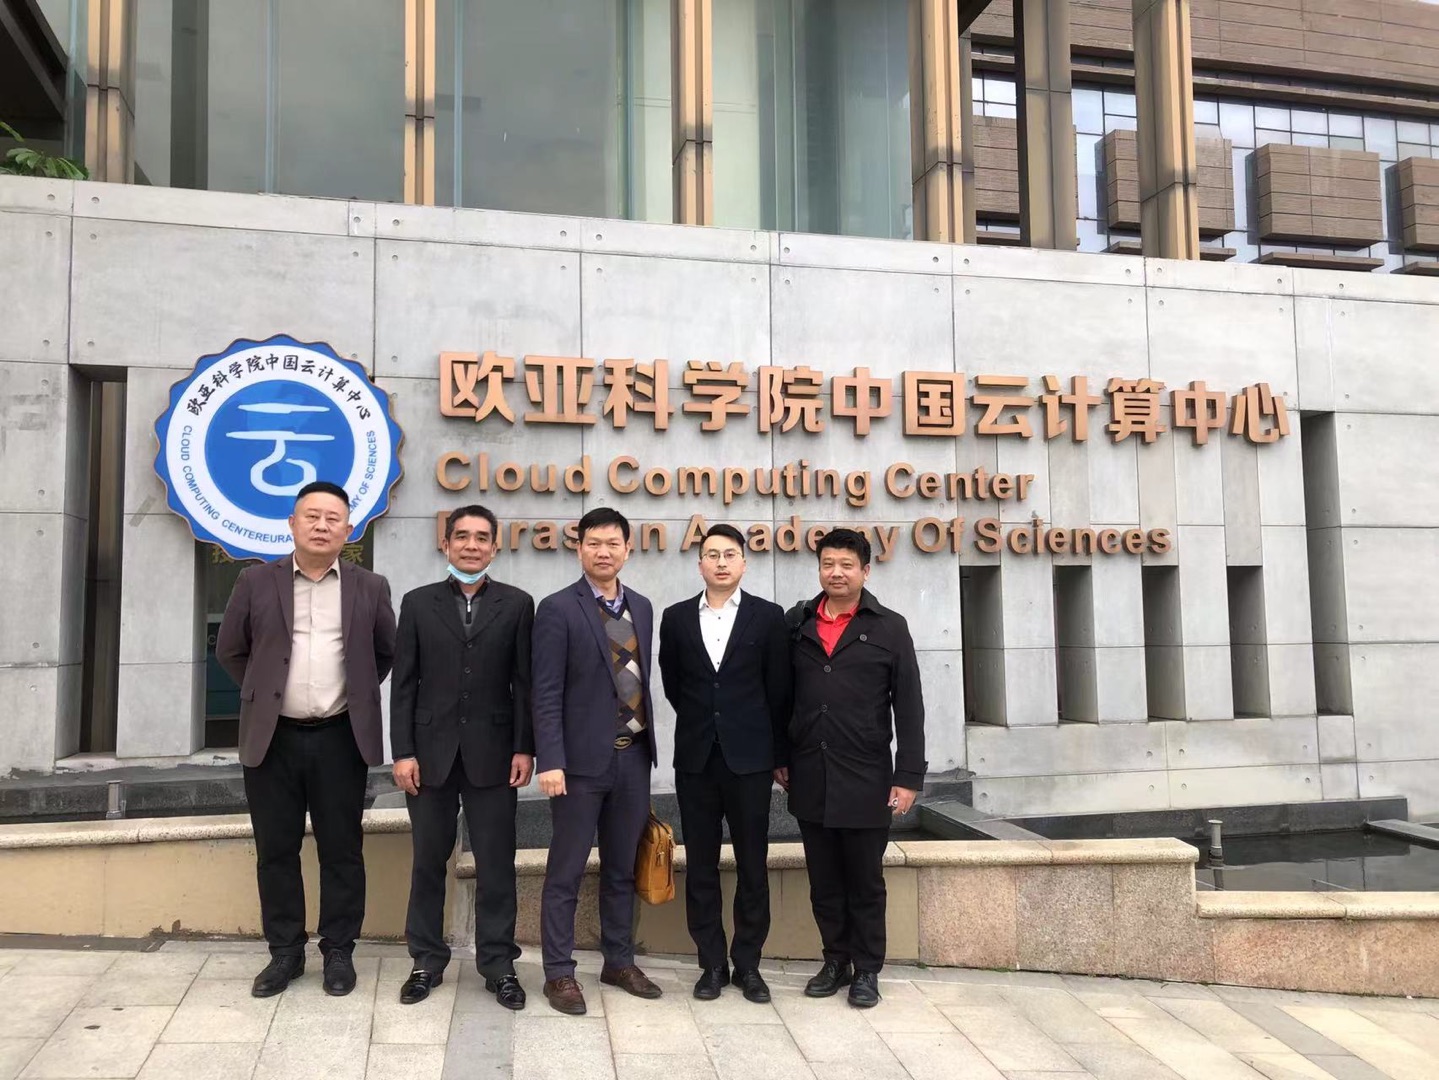 牛喀学城代表团拜访欧亚科学院中国云计算中心、中国科学院云计算研究院、清华大学创新中心